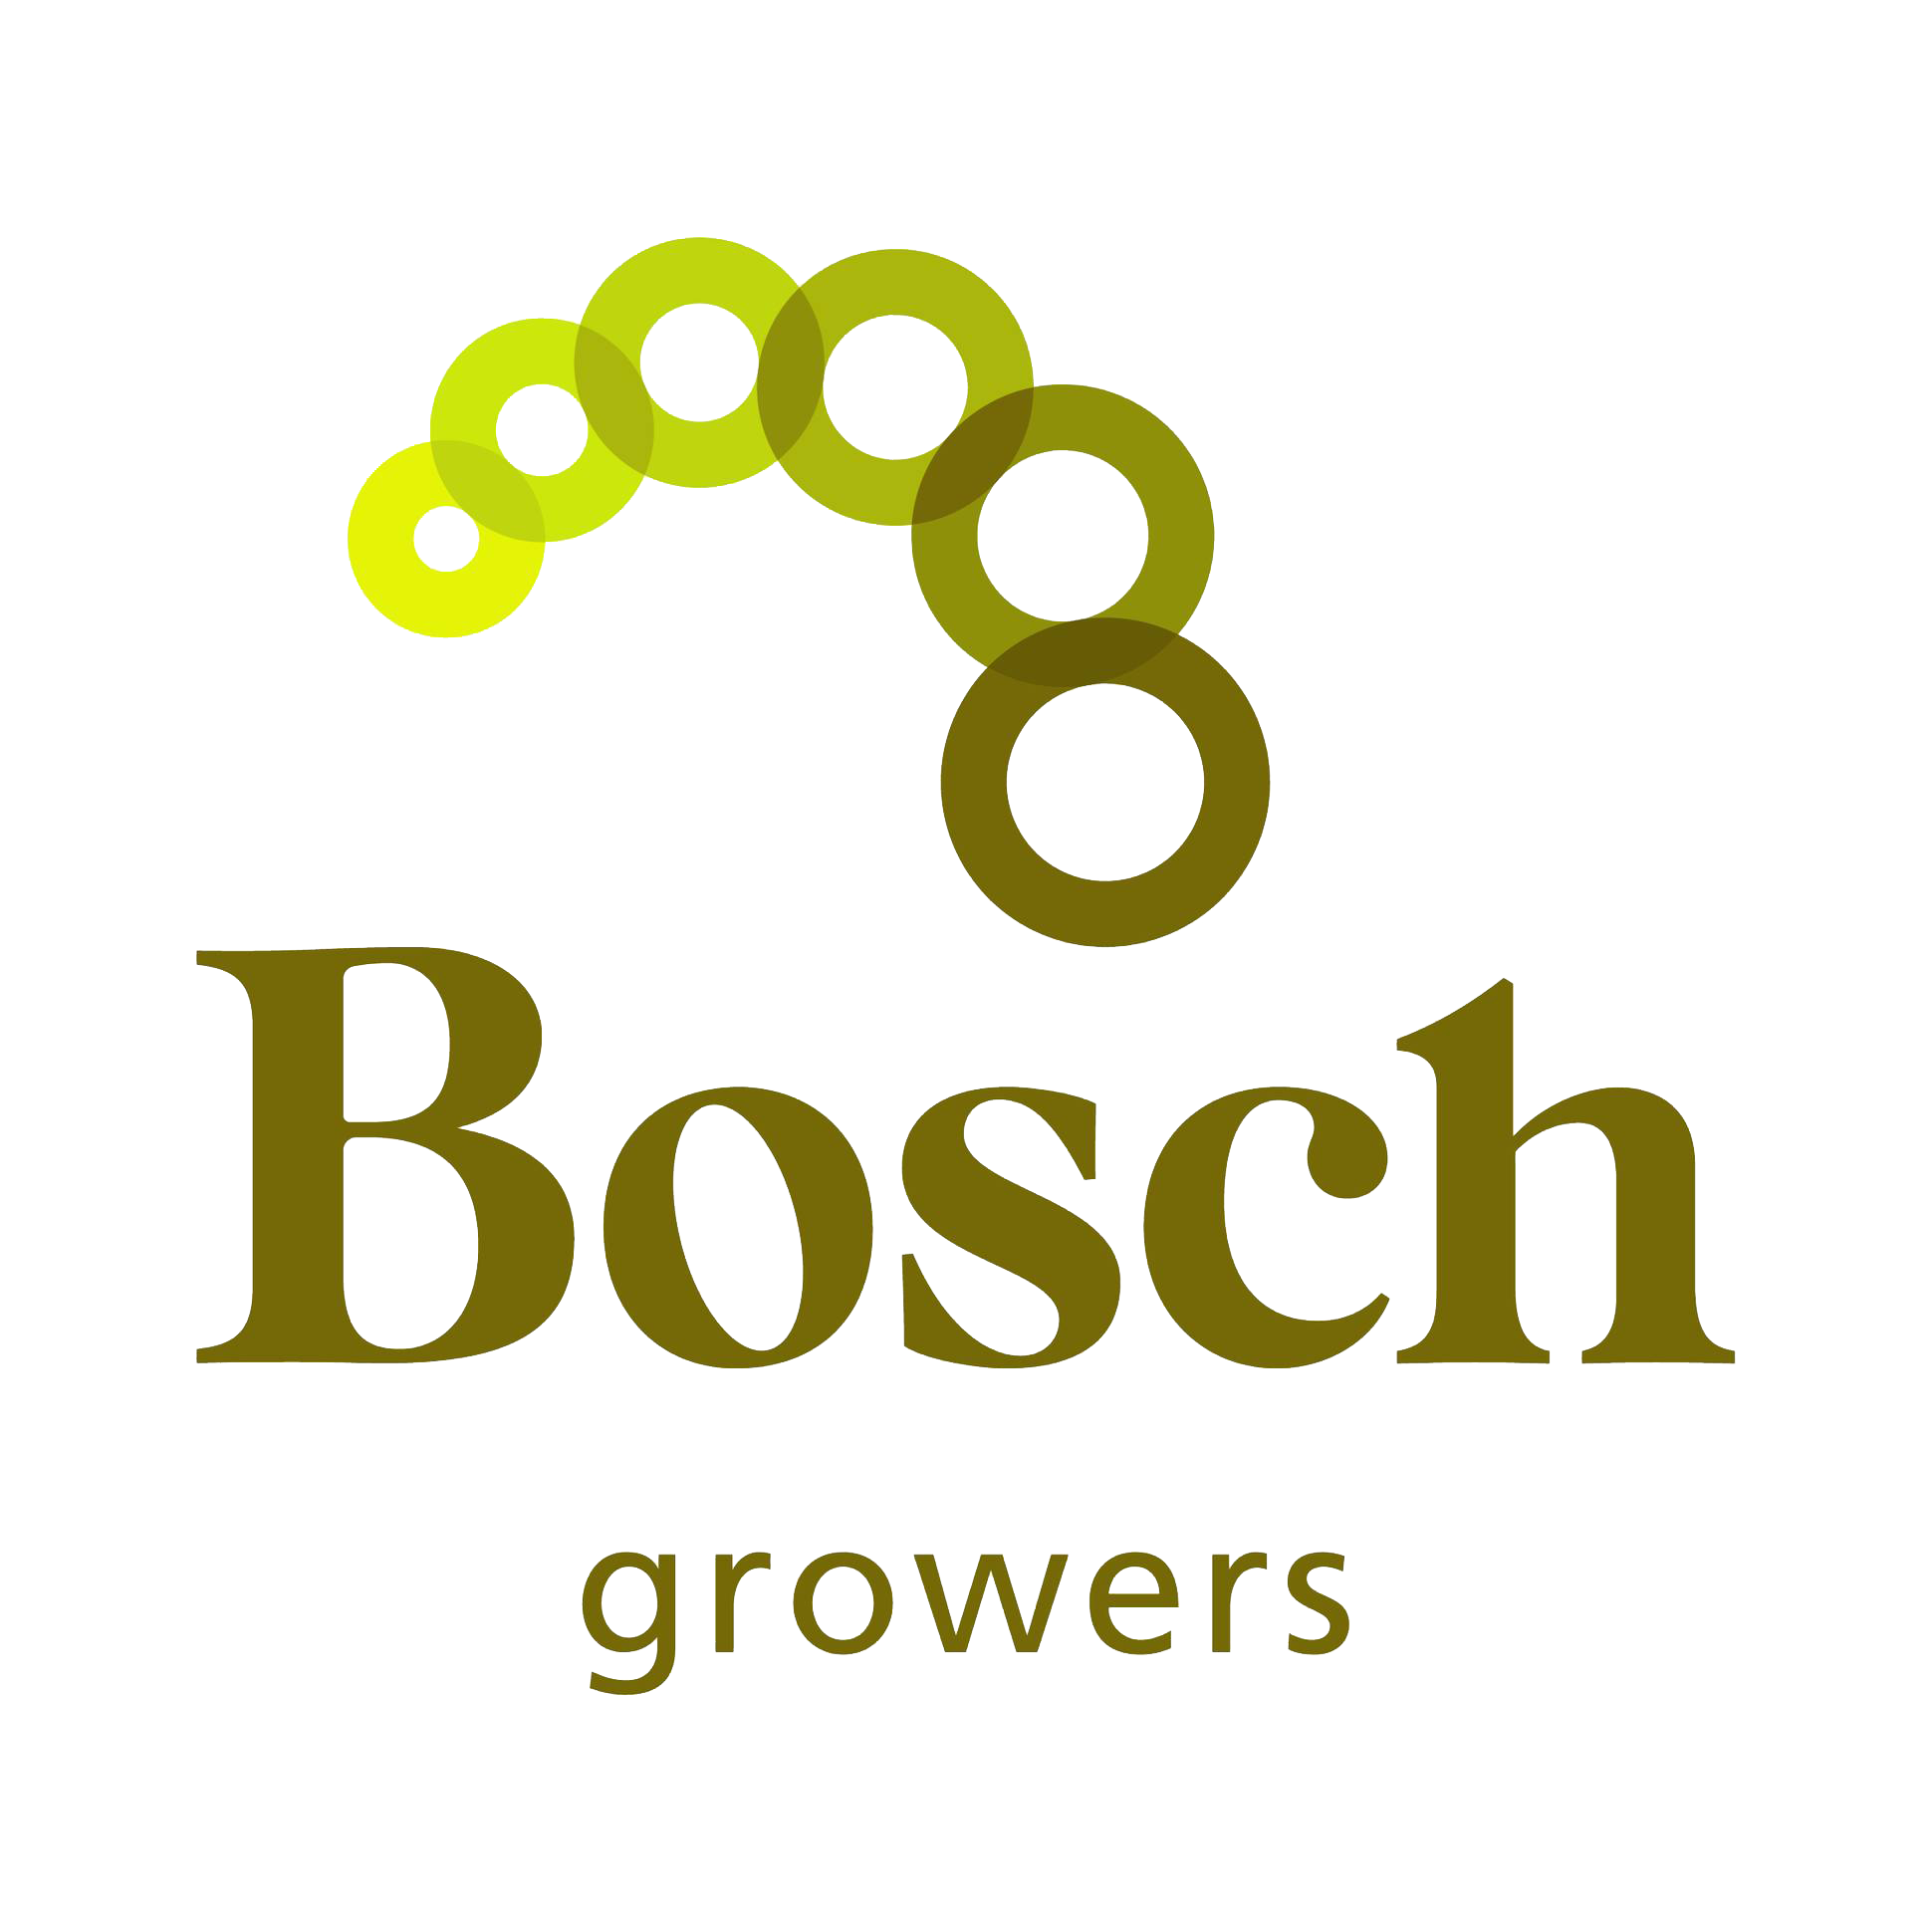 Bosch Growers